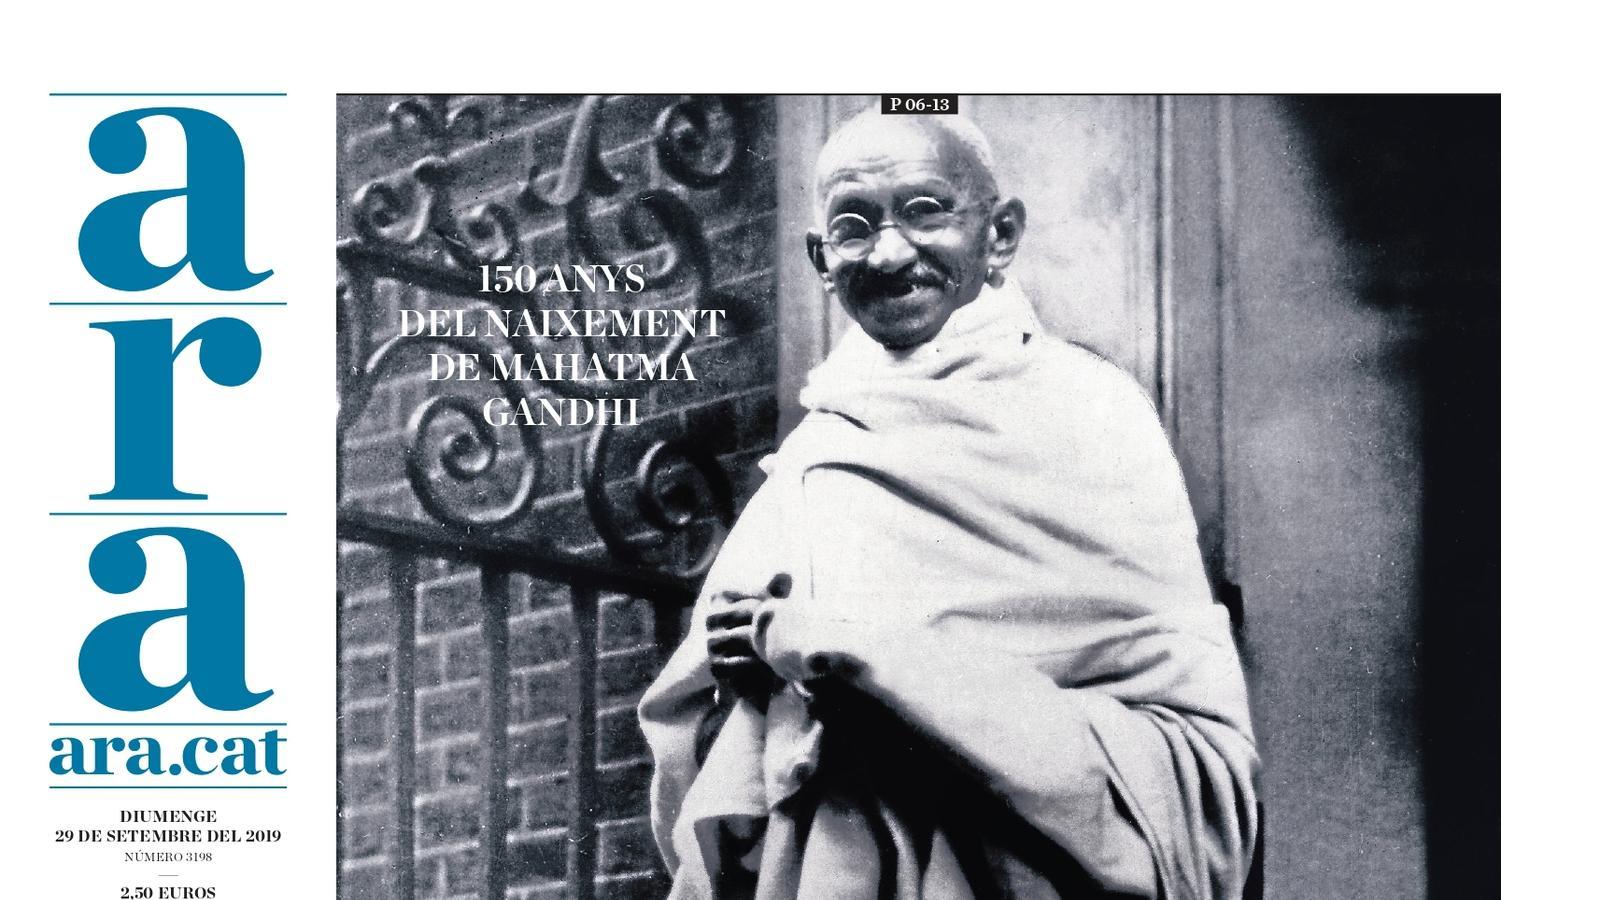 "Un llegat inspirador. 150 anys del naixement de Gandhi", portada de l'ARA